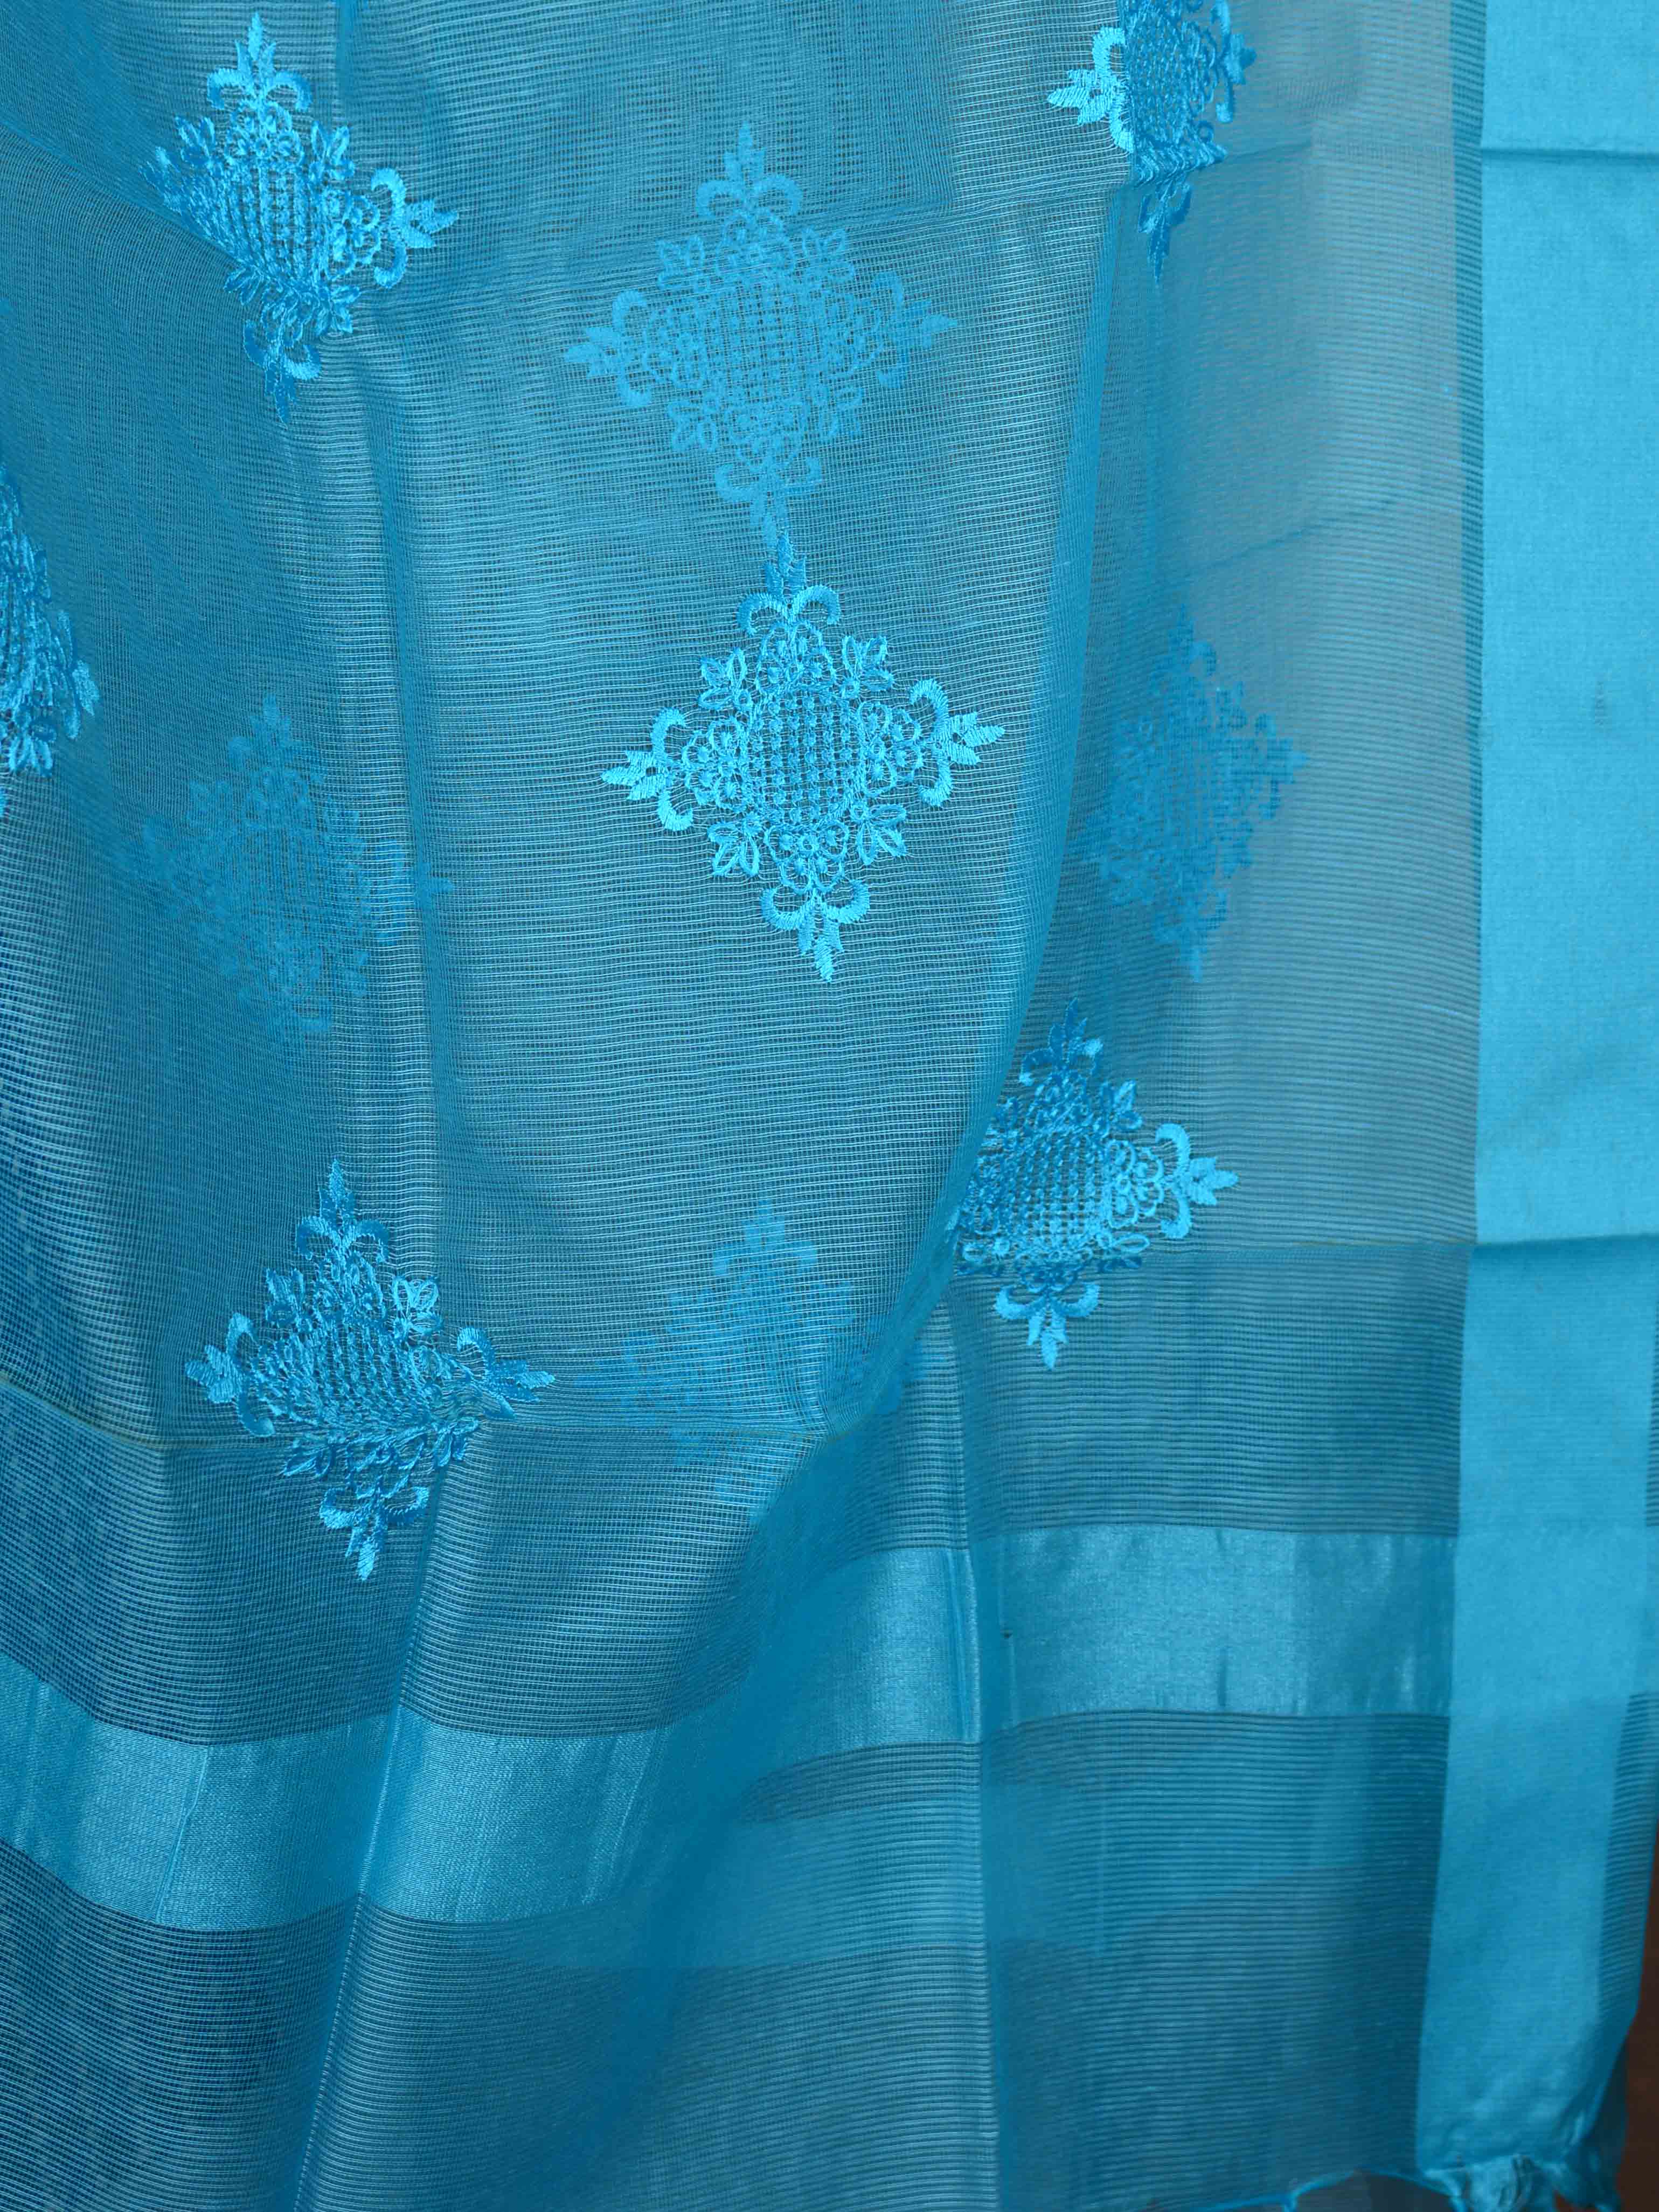 Banarasee Brocade Salwar Kameez Fabric With Organza Dupatta-Blue